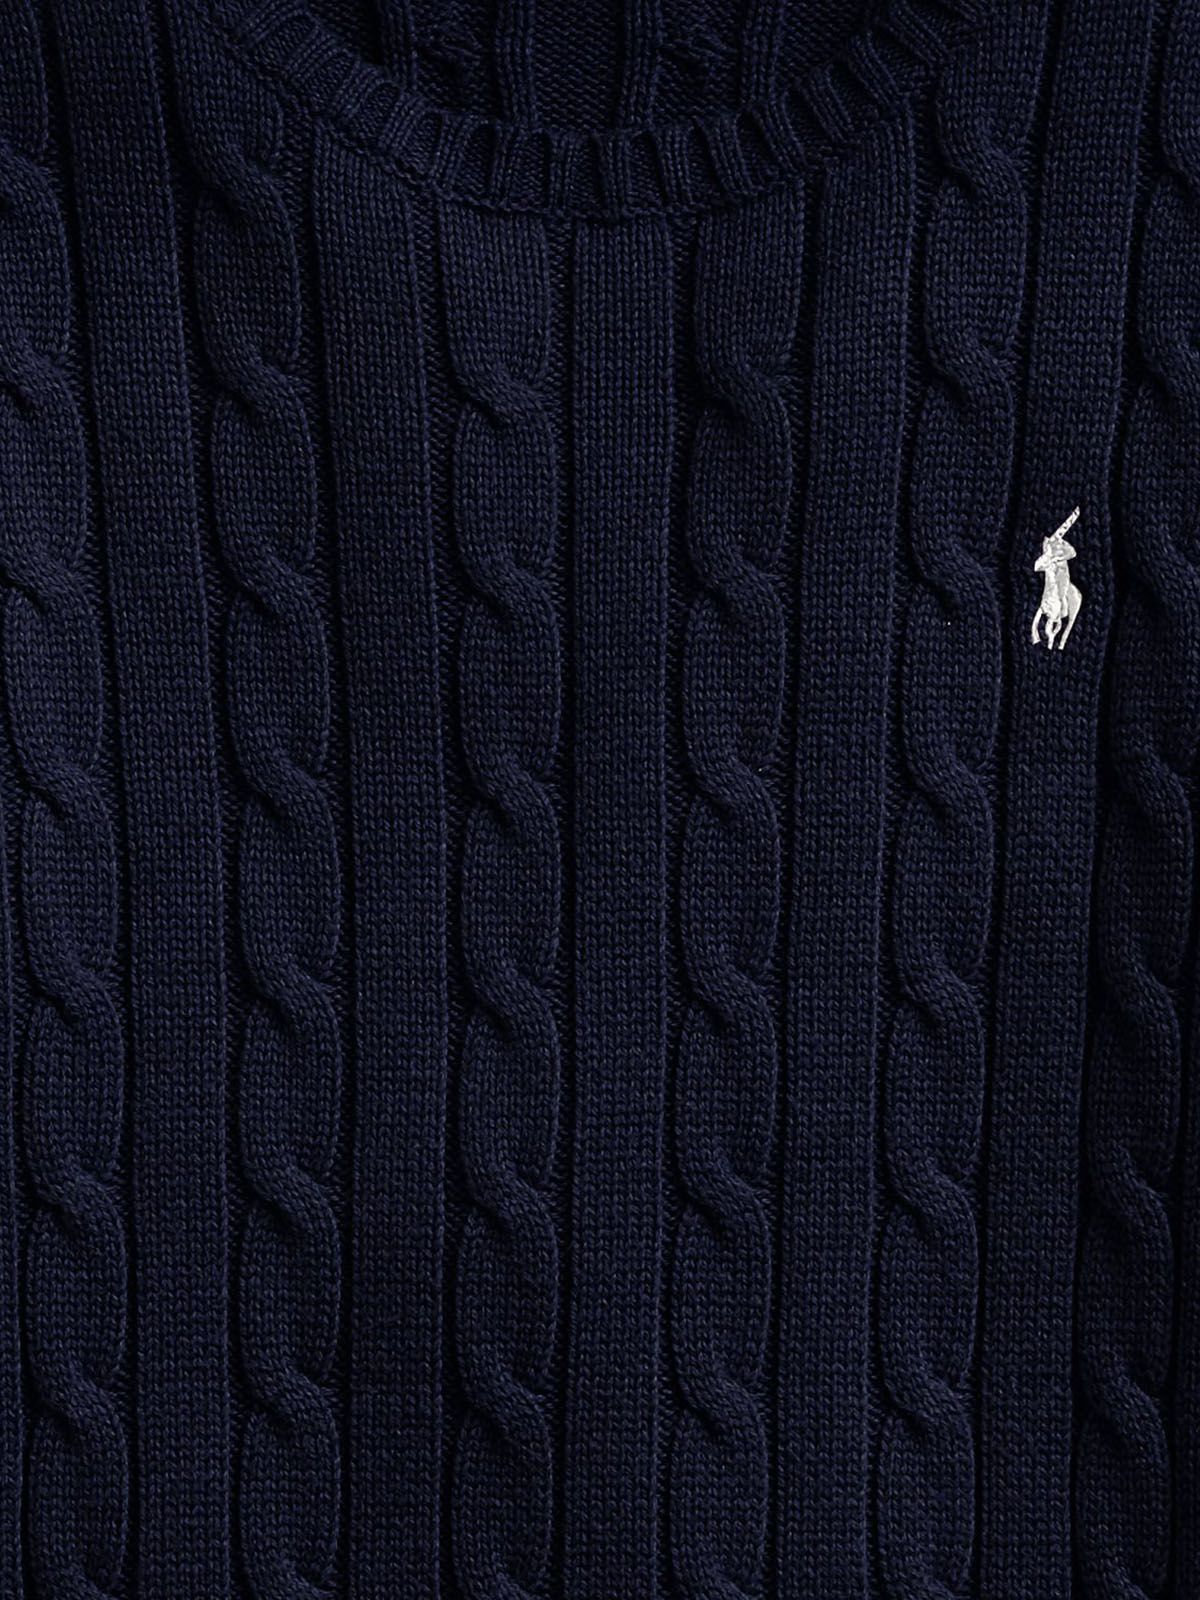 Maglioni Donna Ralph Lauren - Maglia A Girocollo In Cotone A Trecce - Blu